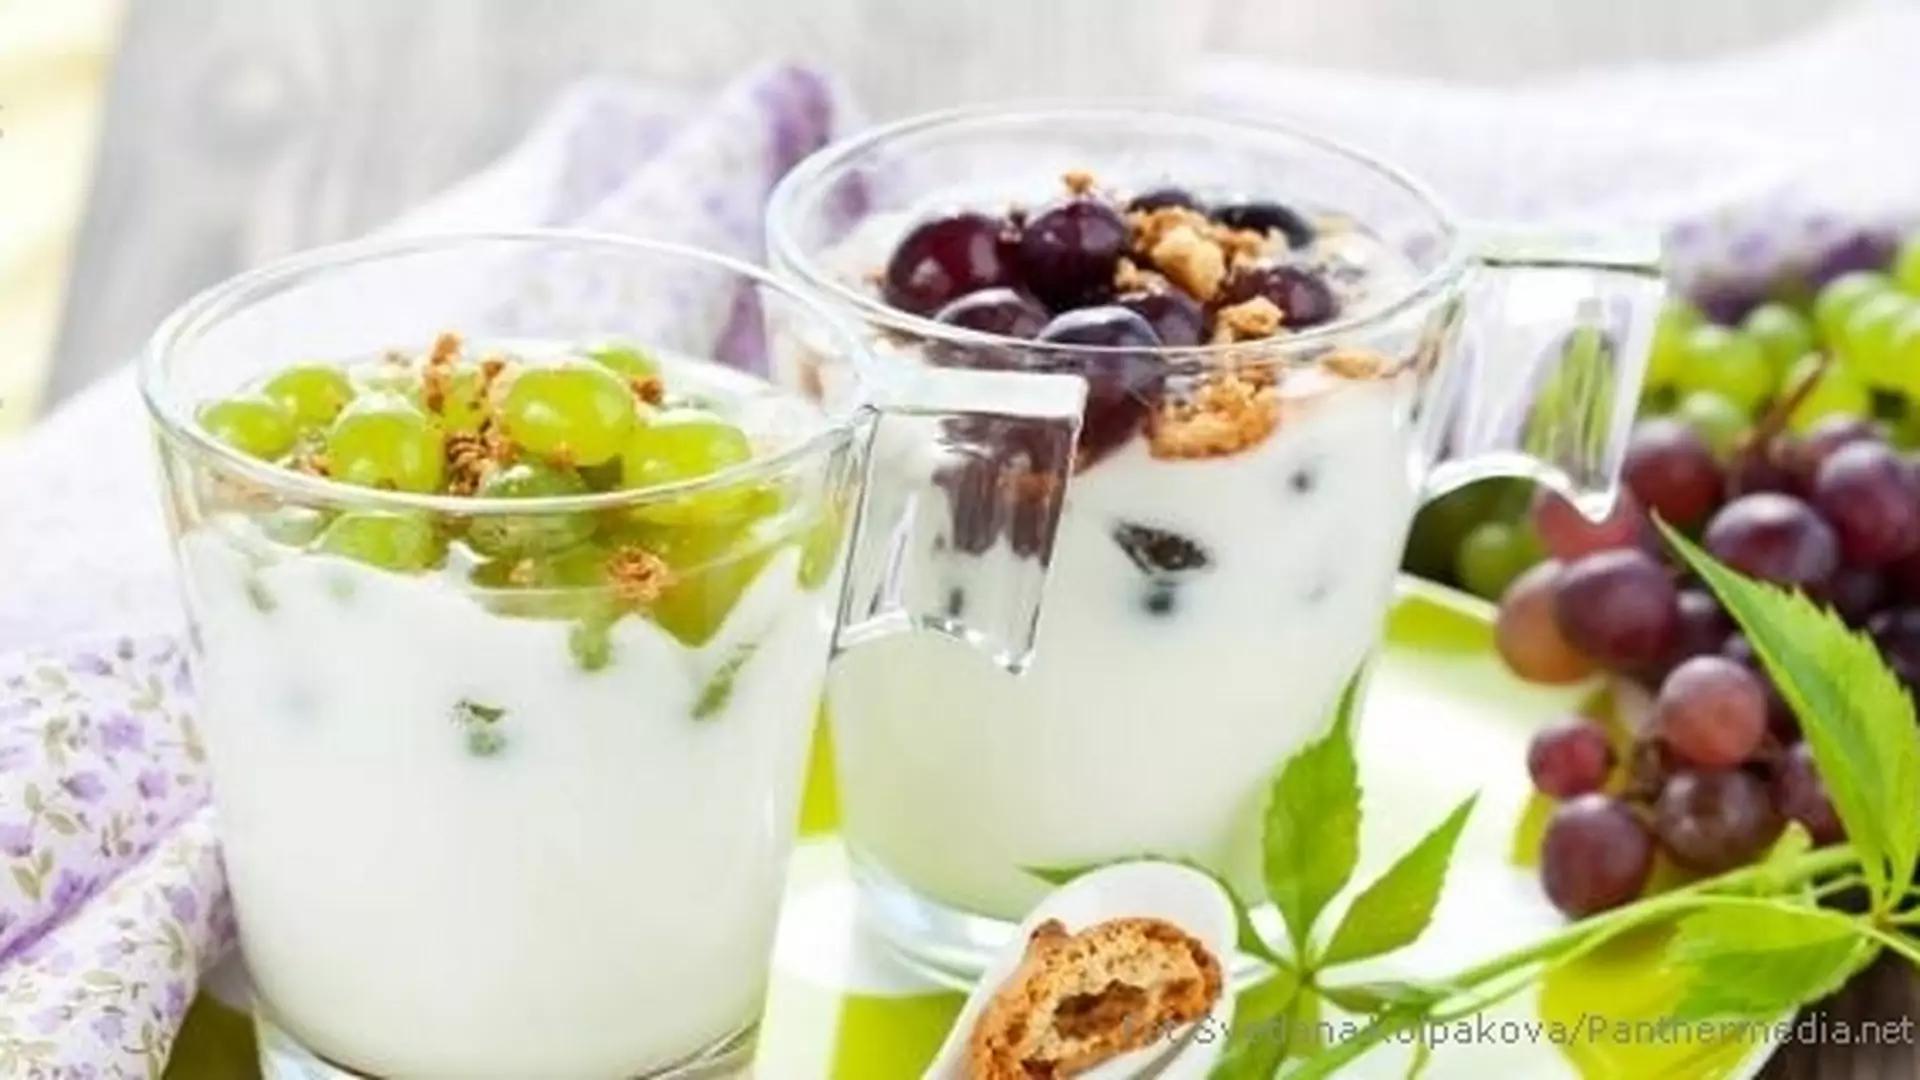 Lekka dieta jogurtowa - odchudzanie jest fajne!